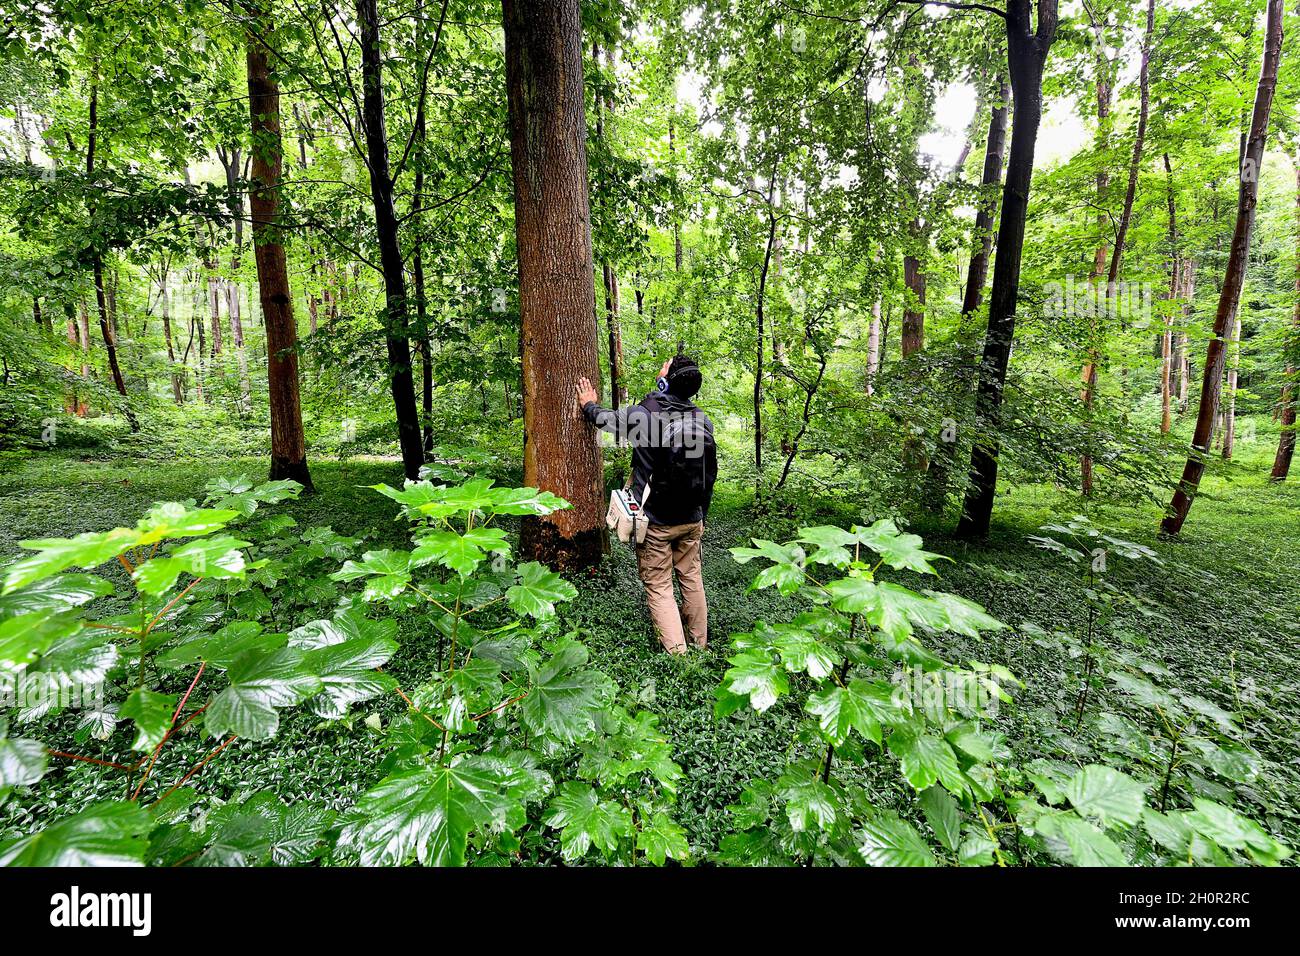 Passeggiata artistica attraverso la Foresta di Olhain (Francia settentrionale): Sentiero sensoriale per gli spettatori che indossano cuffie in mezzo agli alberi e la natura, org Foto Stock